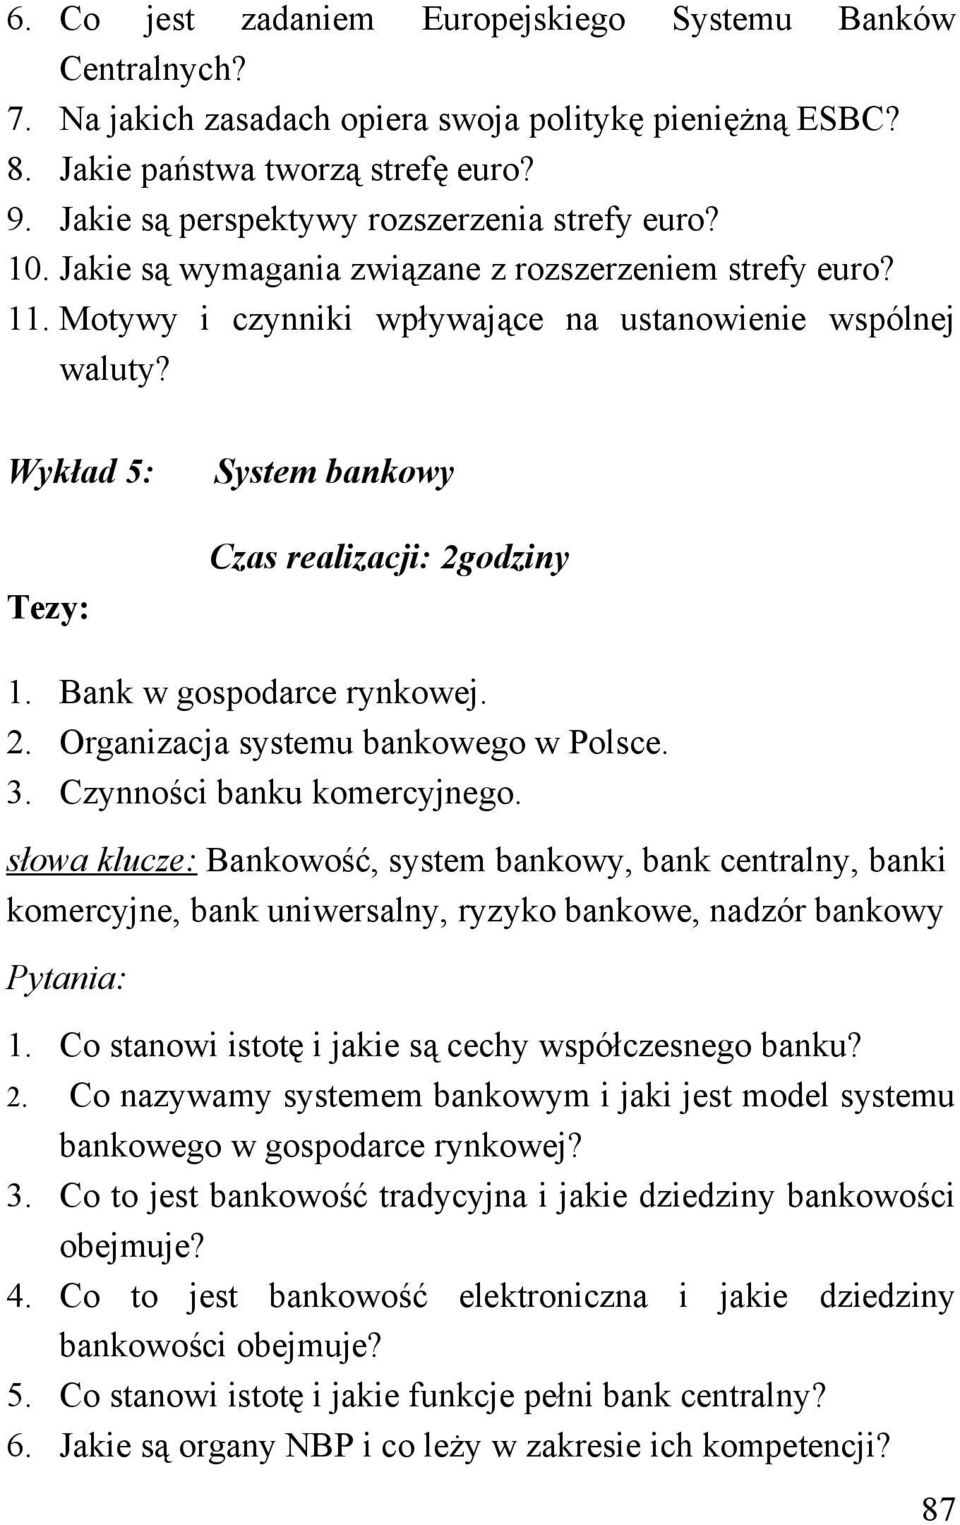 Wykład 5: System bankowy Czas realizacji: 2godziny 1. Bank w gospodarce rynkowej. 2. Organizacja systemu bankowego w Polsce. 3. Czynności banku komercyjnego.